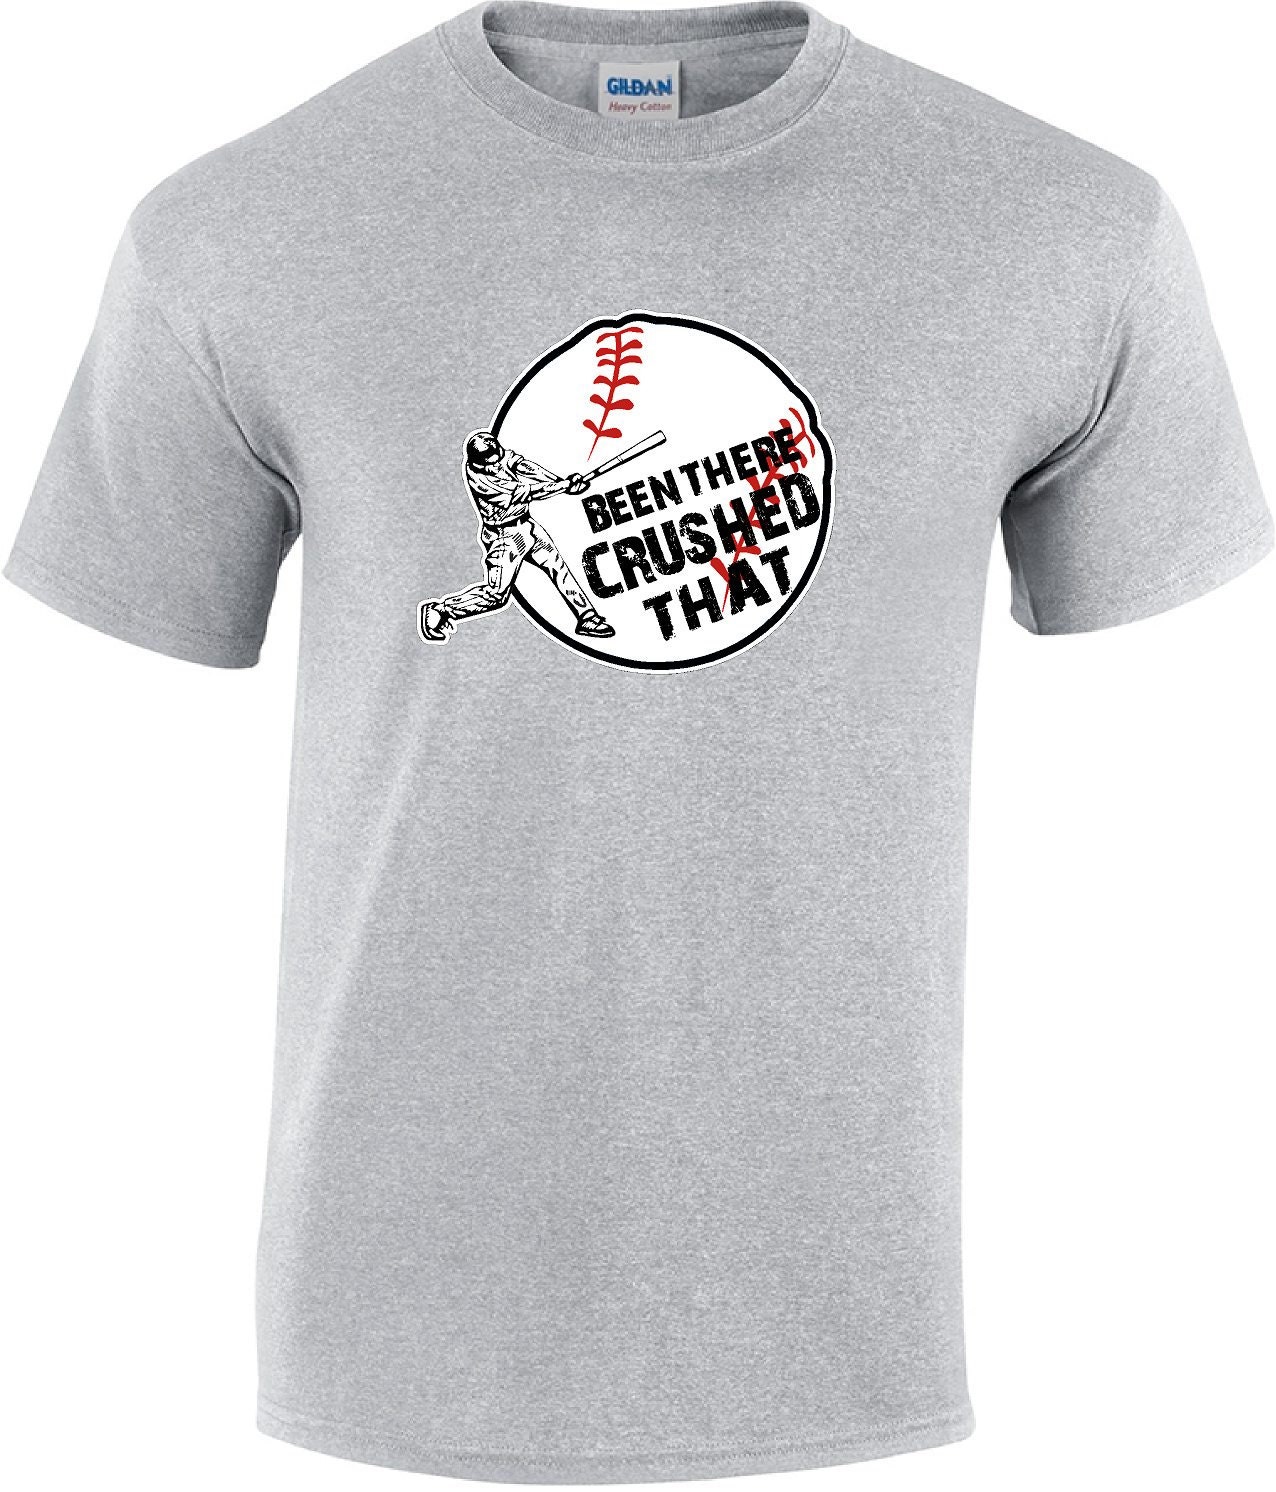 Boys Baseball Tshirt Boys Sports Shirt Baseball Shirts Boys